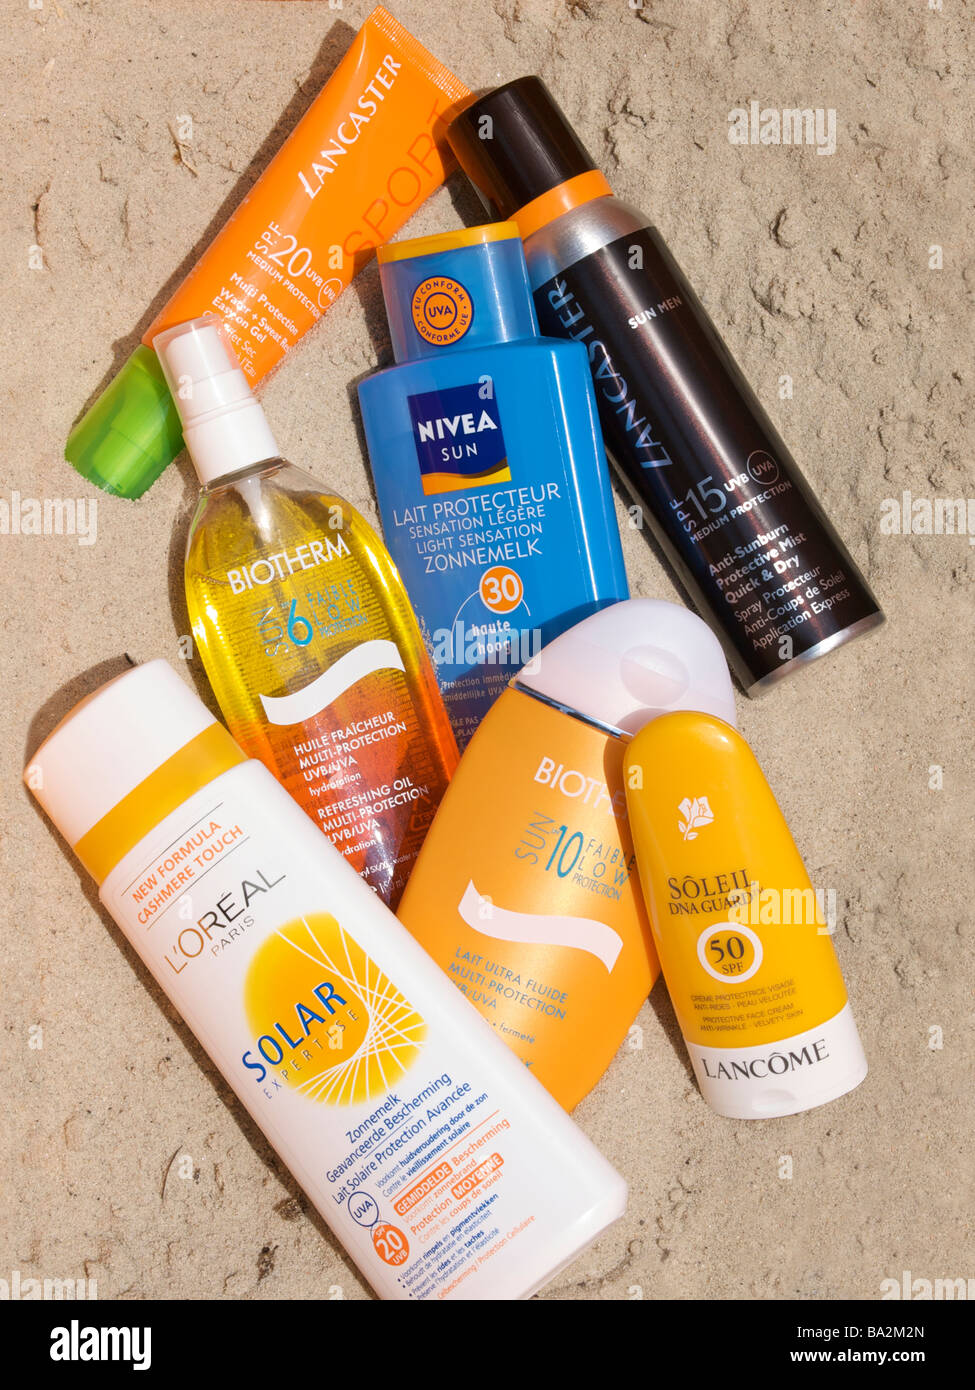 Verschiedenen Sonne Schutz Creme Hautpflege-Produkte im Sand durch echtes Sonnenlicht beleuchtet Stockfoto